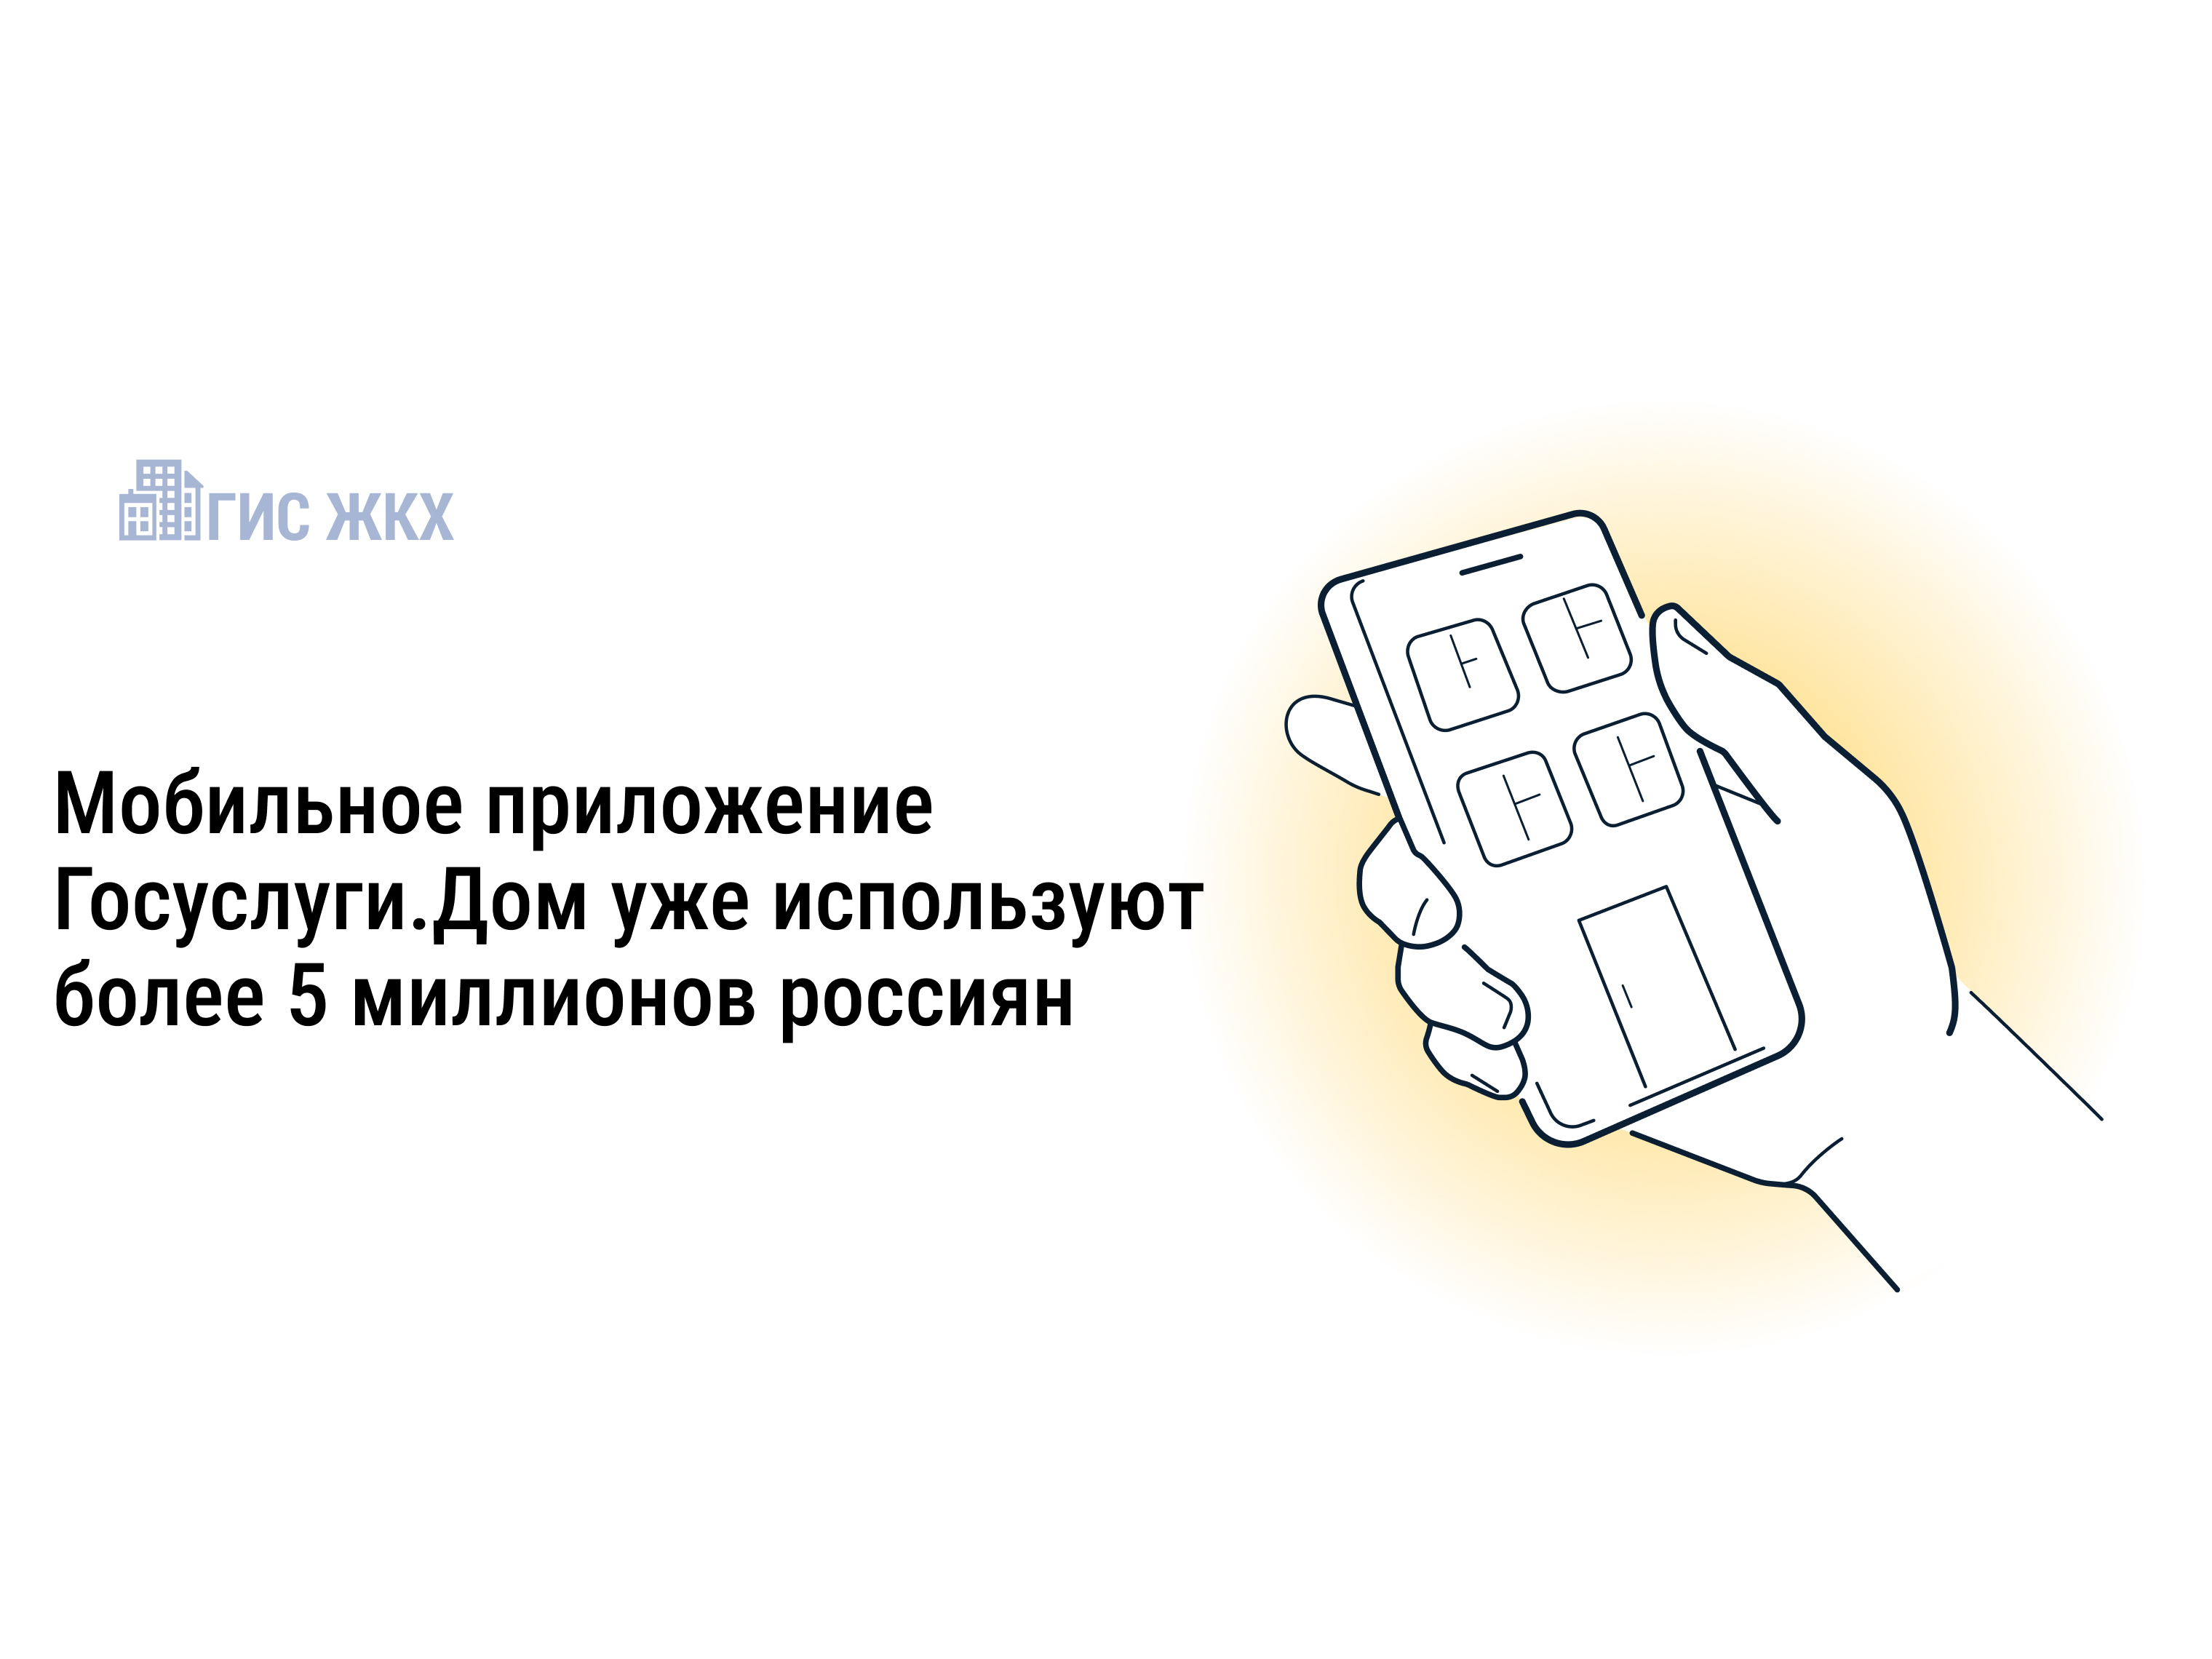 Более 5 миллионов россиян стали пользователями приложения Госуслуги.Дом.